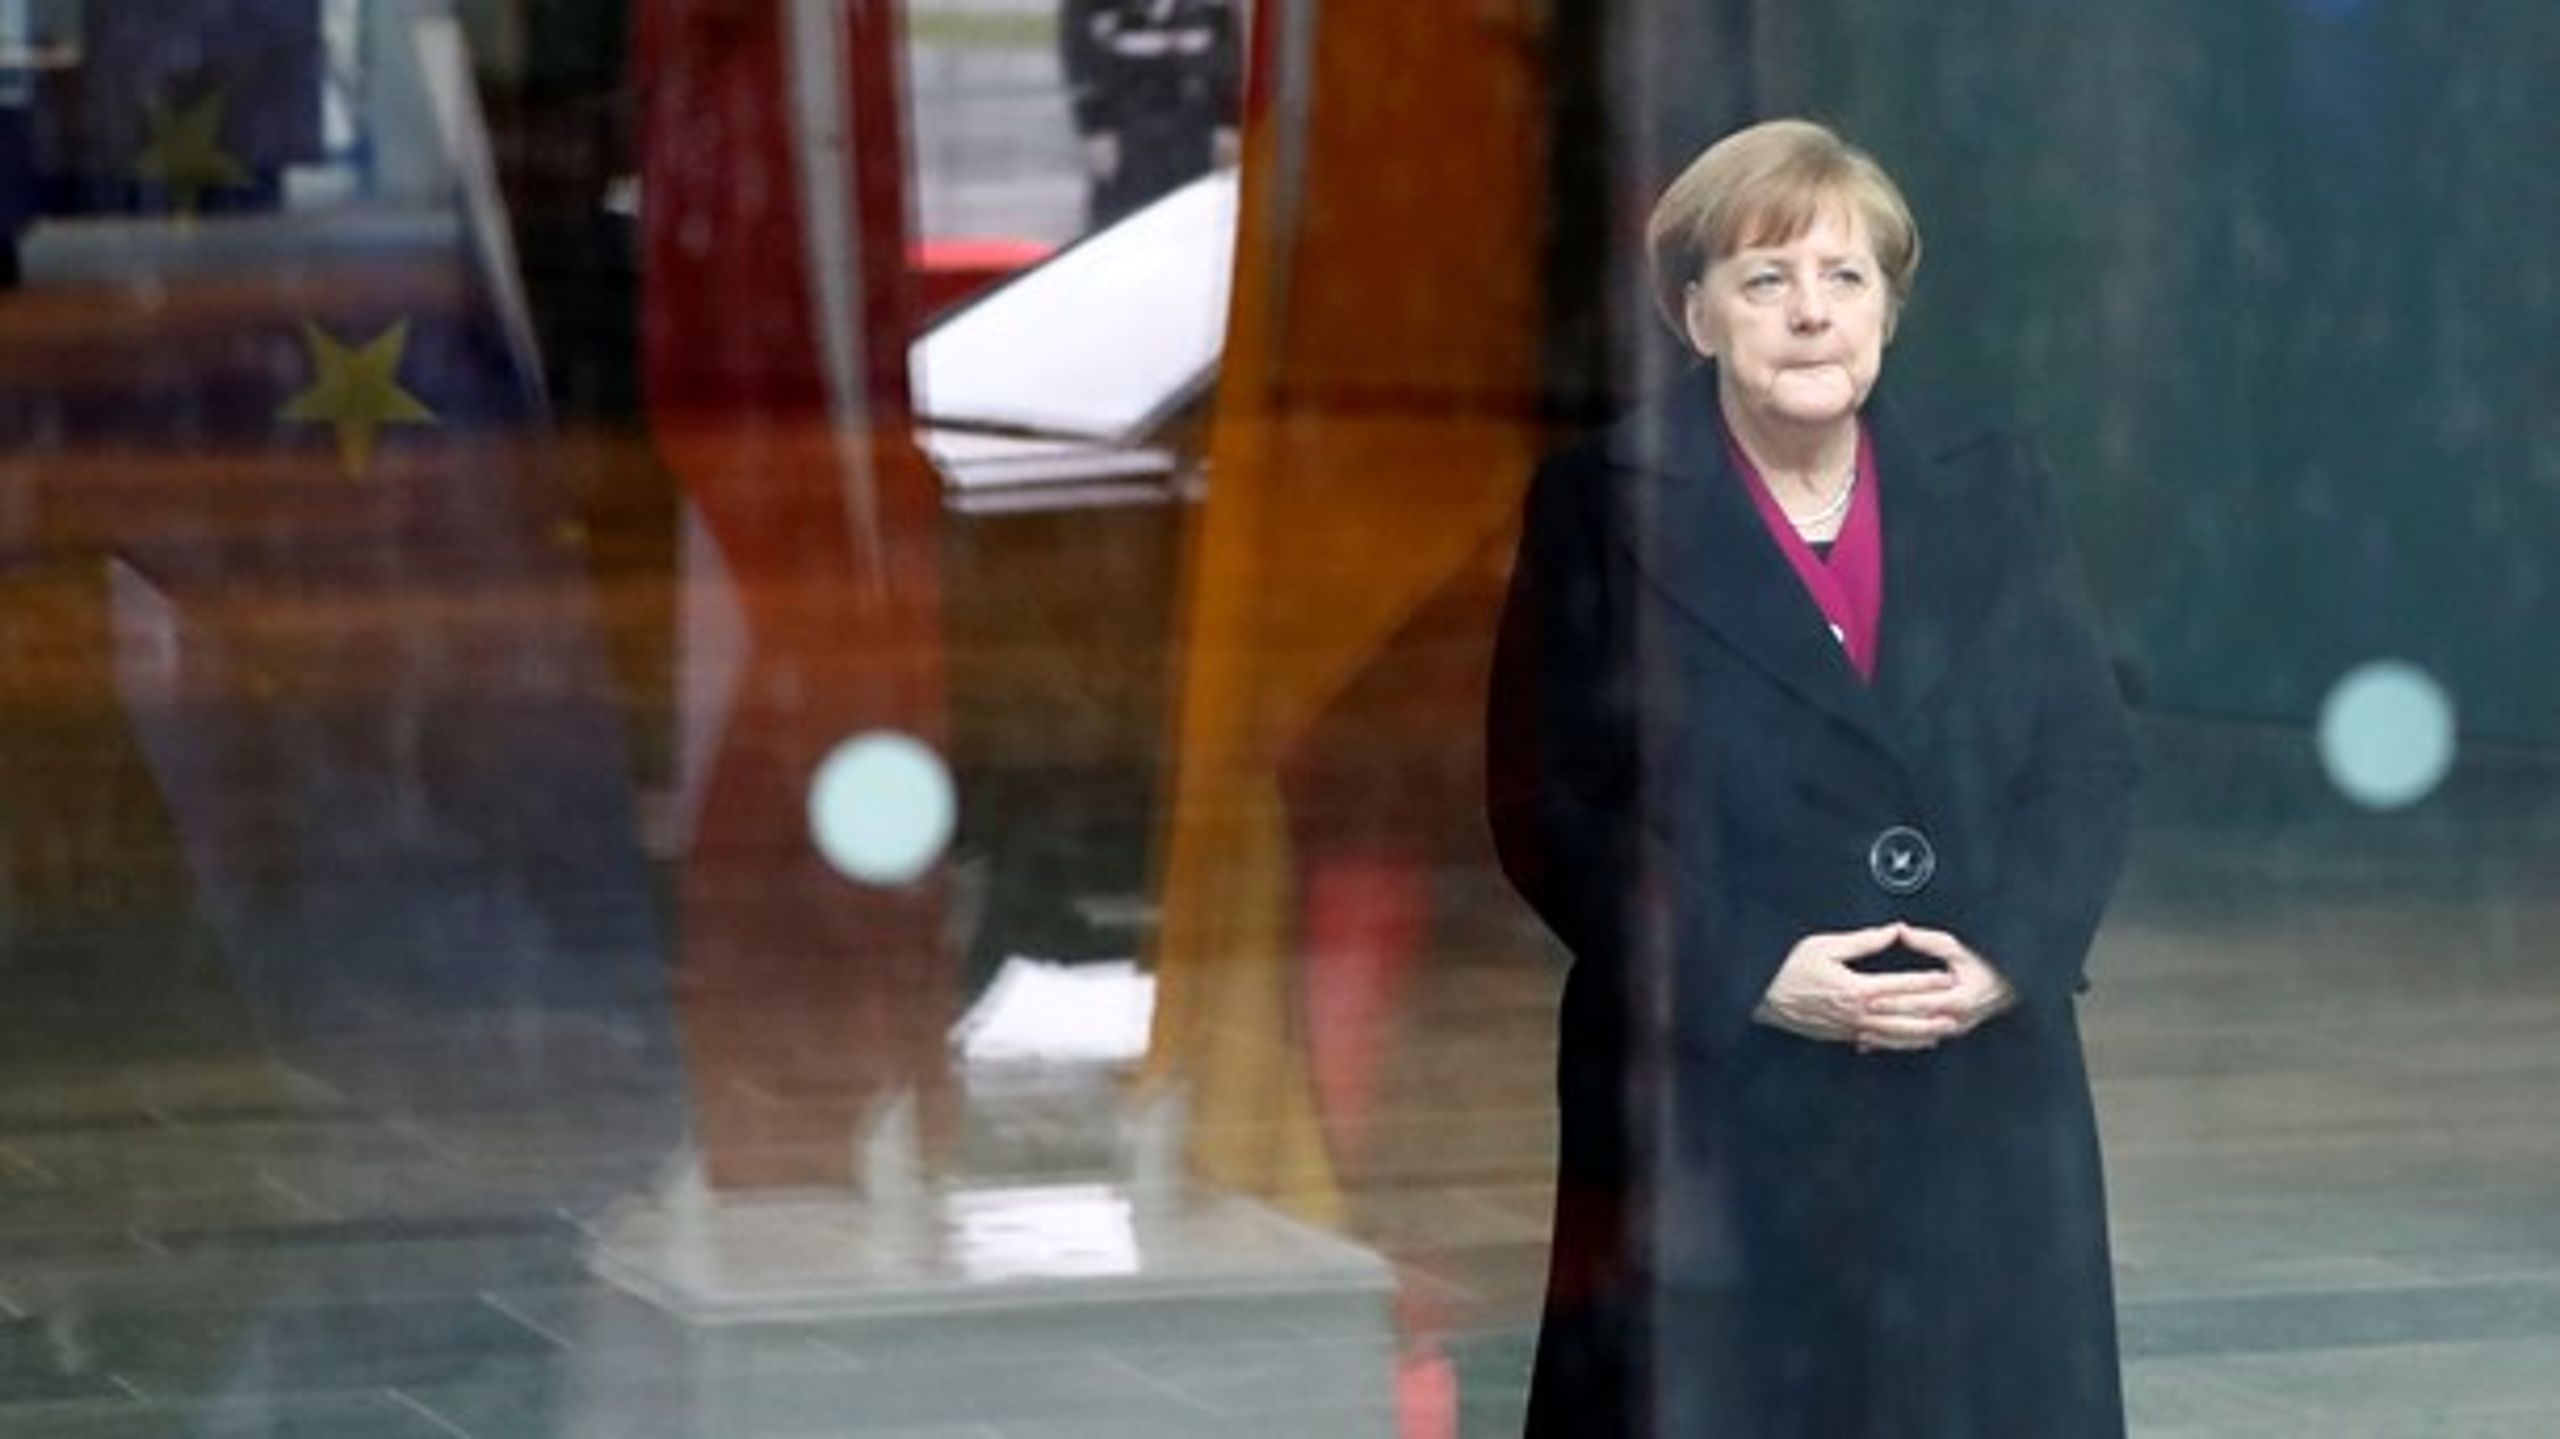 Tyskland under Merkel er på sin egen måde lige så selvcentreret som USA under Trump, skriver Mikkel Vedby Rasmussen.